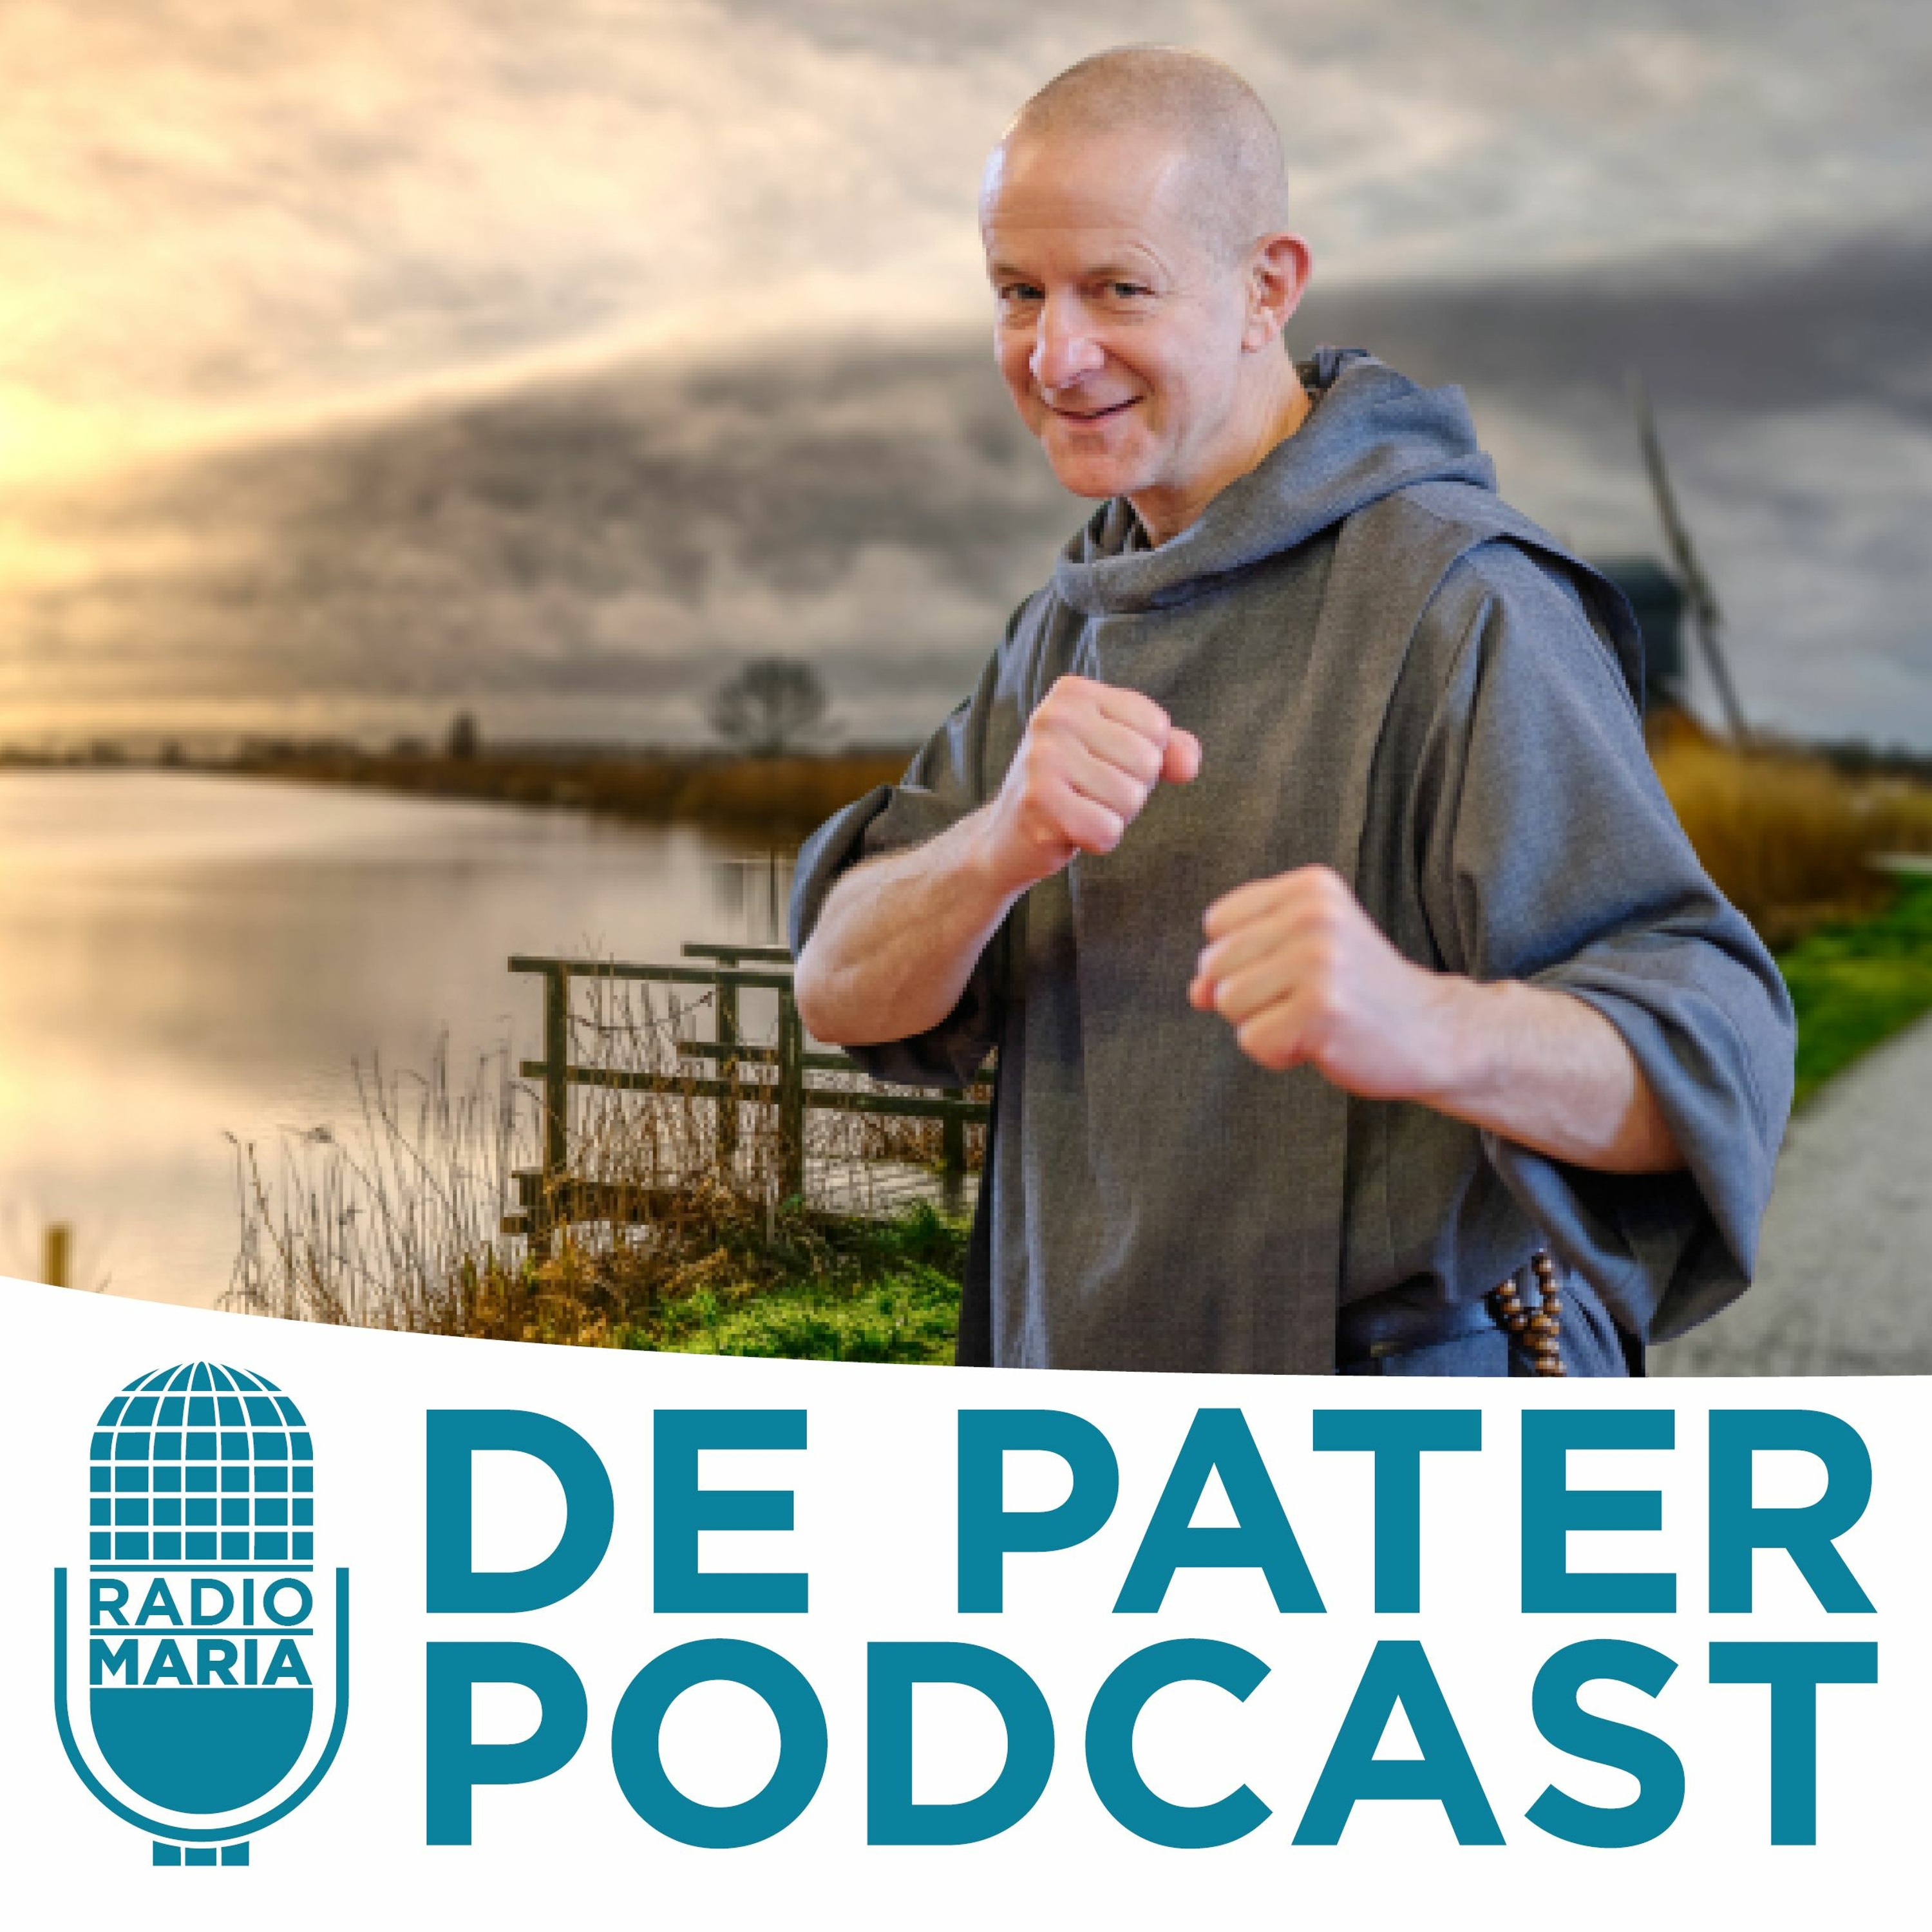 De Pater Podcast - seizoen 2 - afl. 35 Rationaliteit en spiritualiteit in Rusland